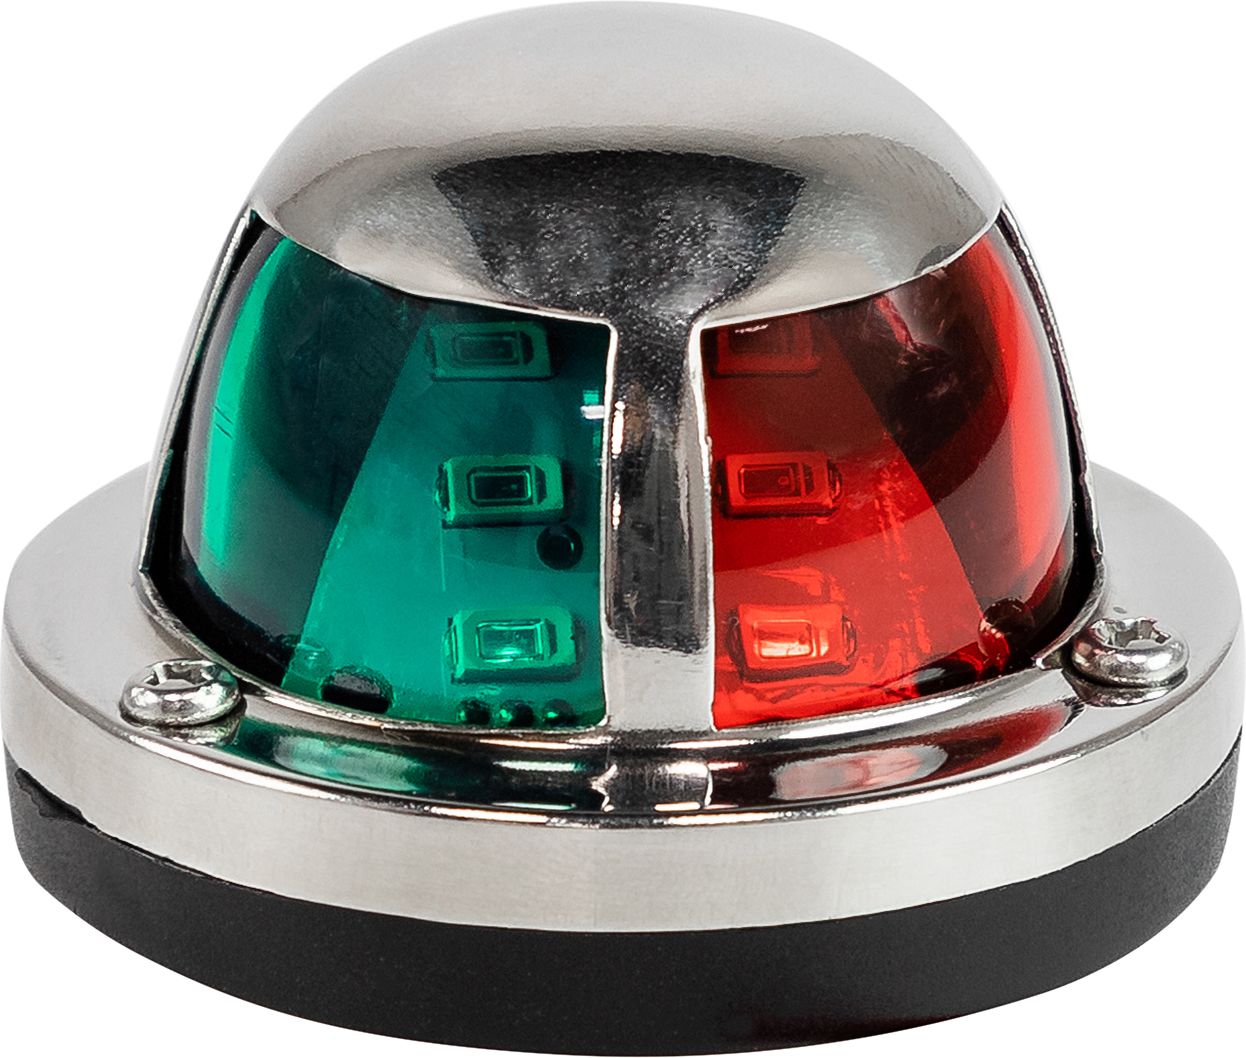 Огонь ходовой комбинированый (красный, зеленый), SS304, 12-24 В, LED LPNVGCBLED00605 навигационный огонь врезаемый зеленый more 10244744